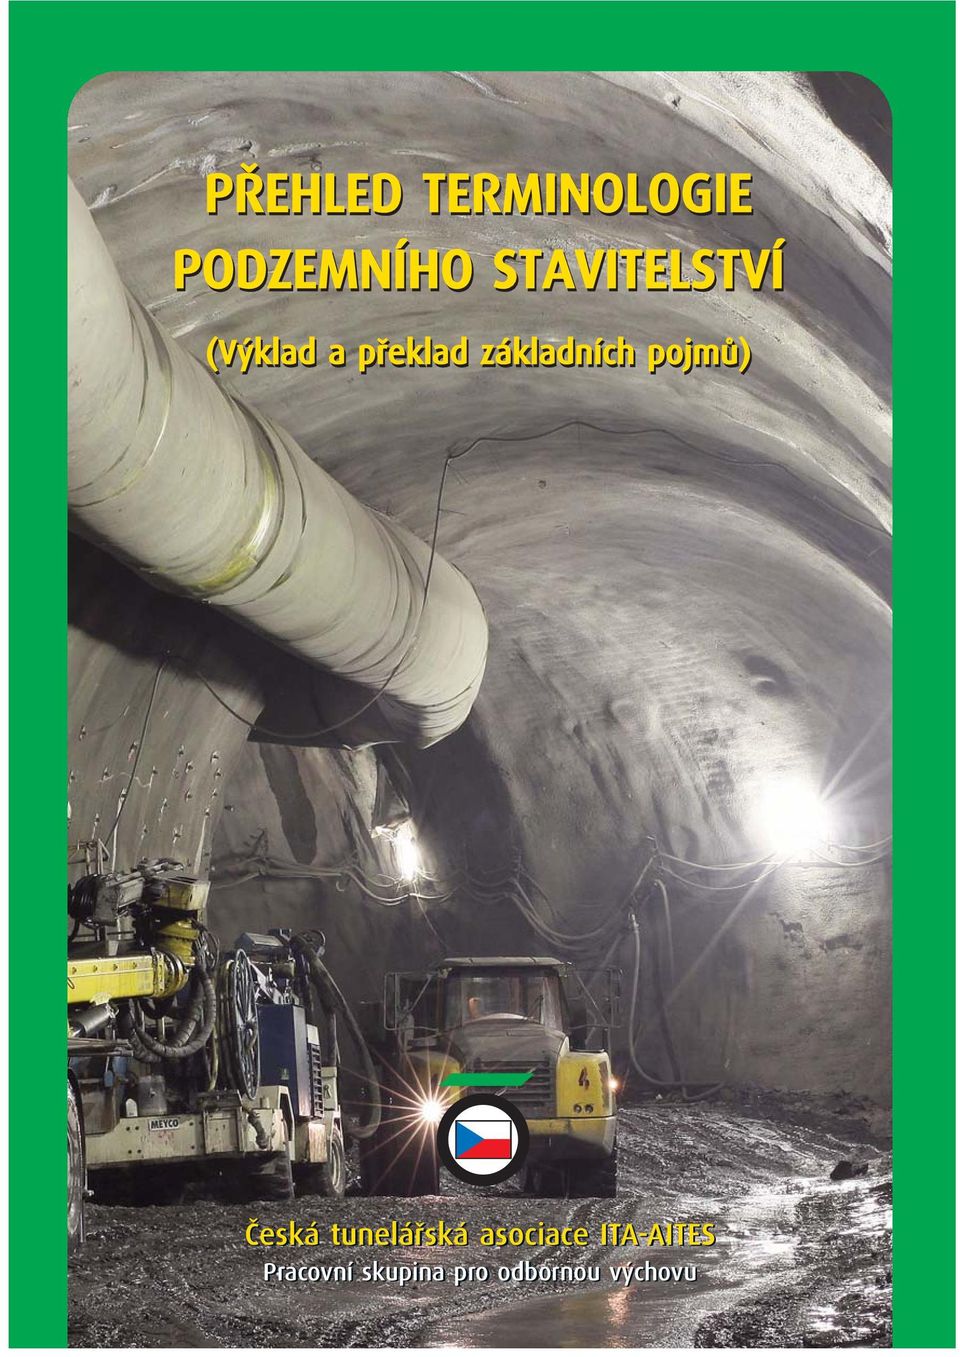 základních pojmů) Česká tunelářská